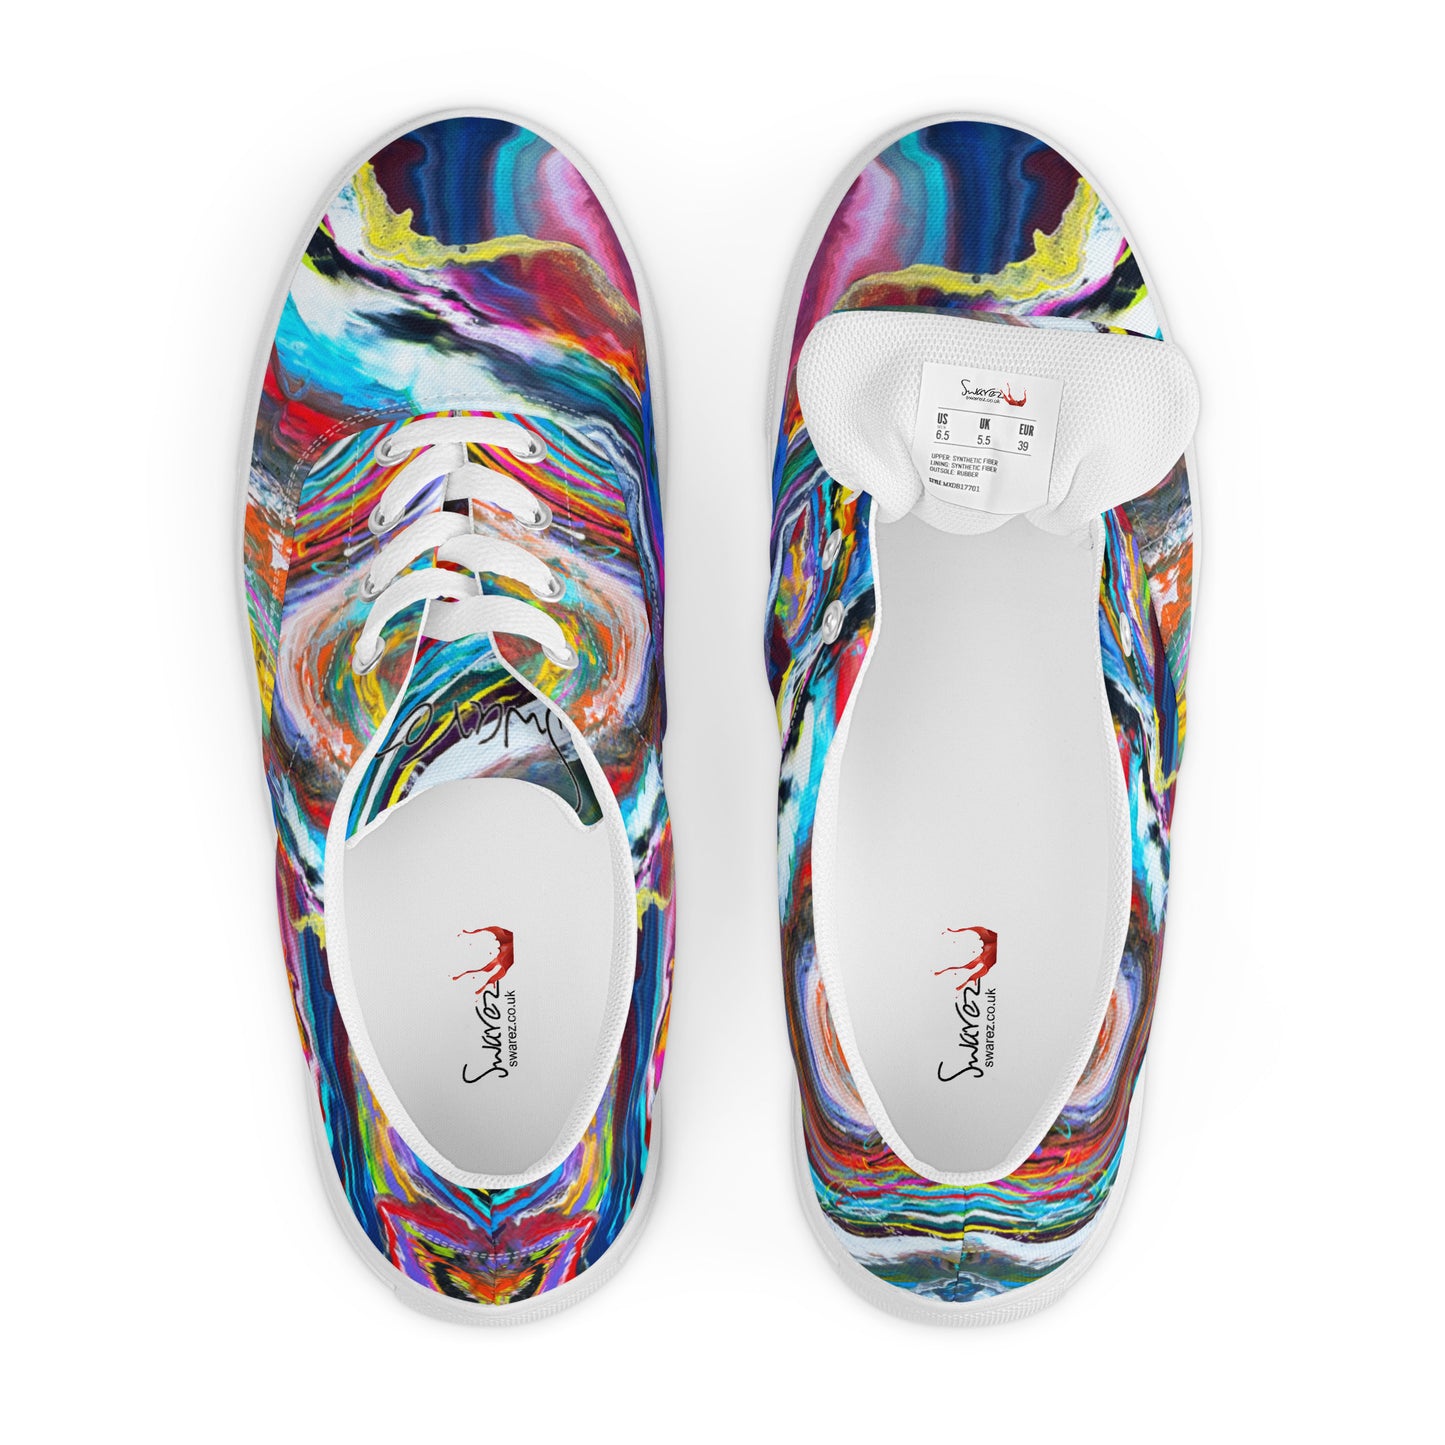 Women’s lace-up canvas shoes - Rainbow Wave design